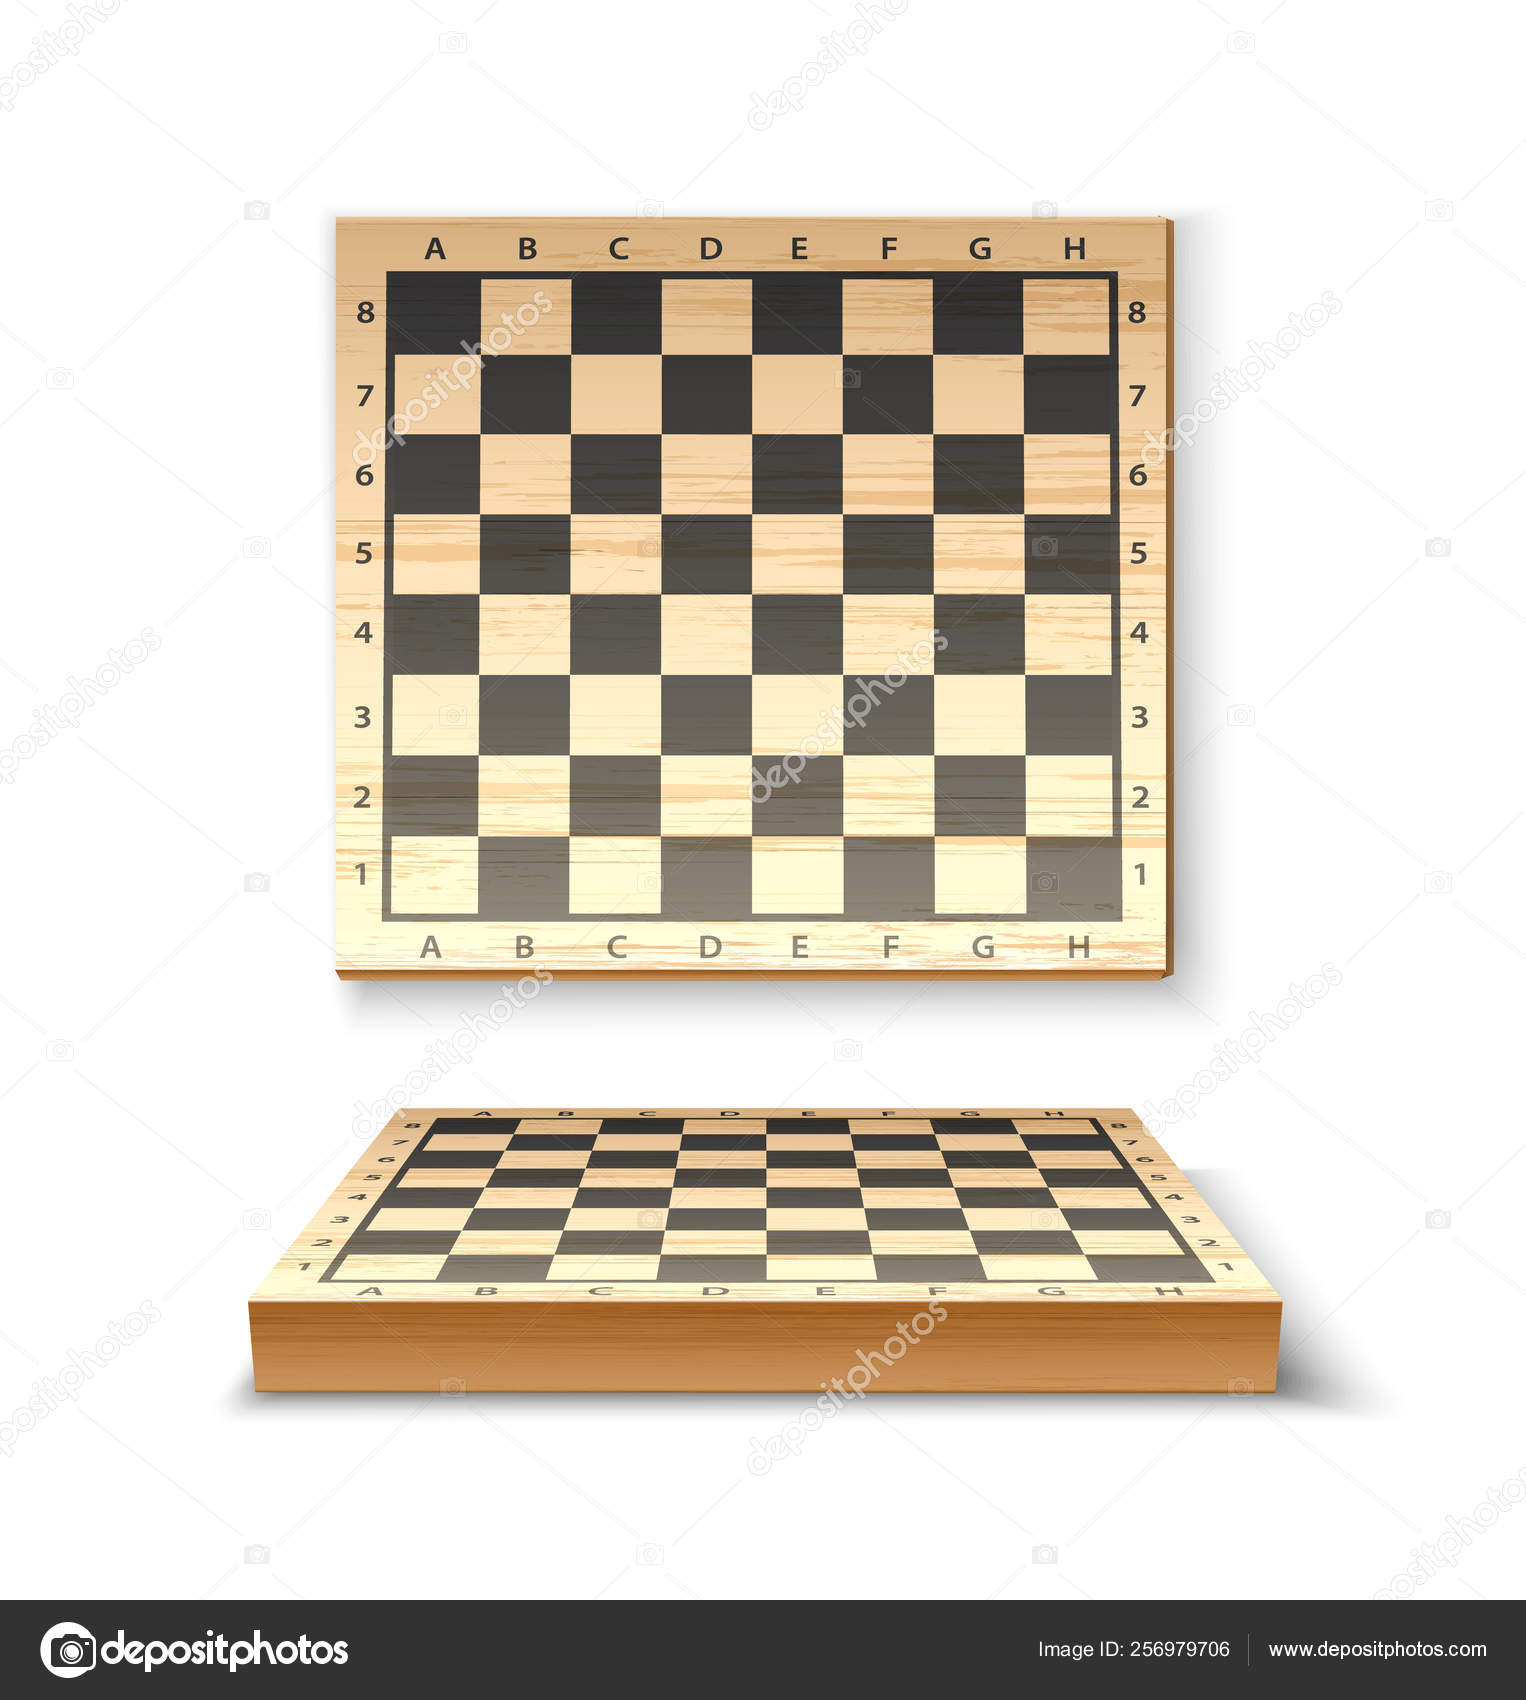 Conceito de jogo de xadrez com tabuleiro realista e peças preto e brancas